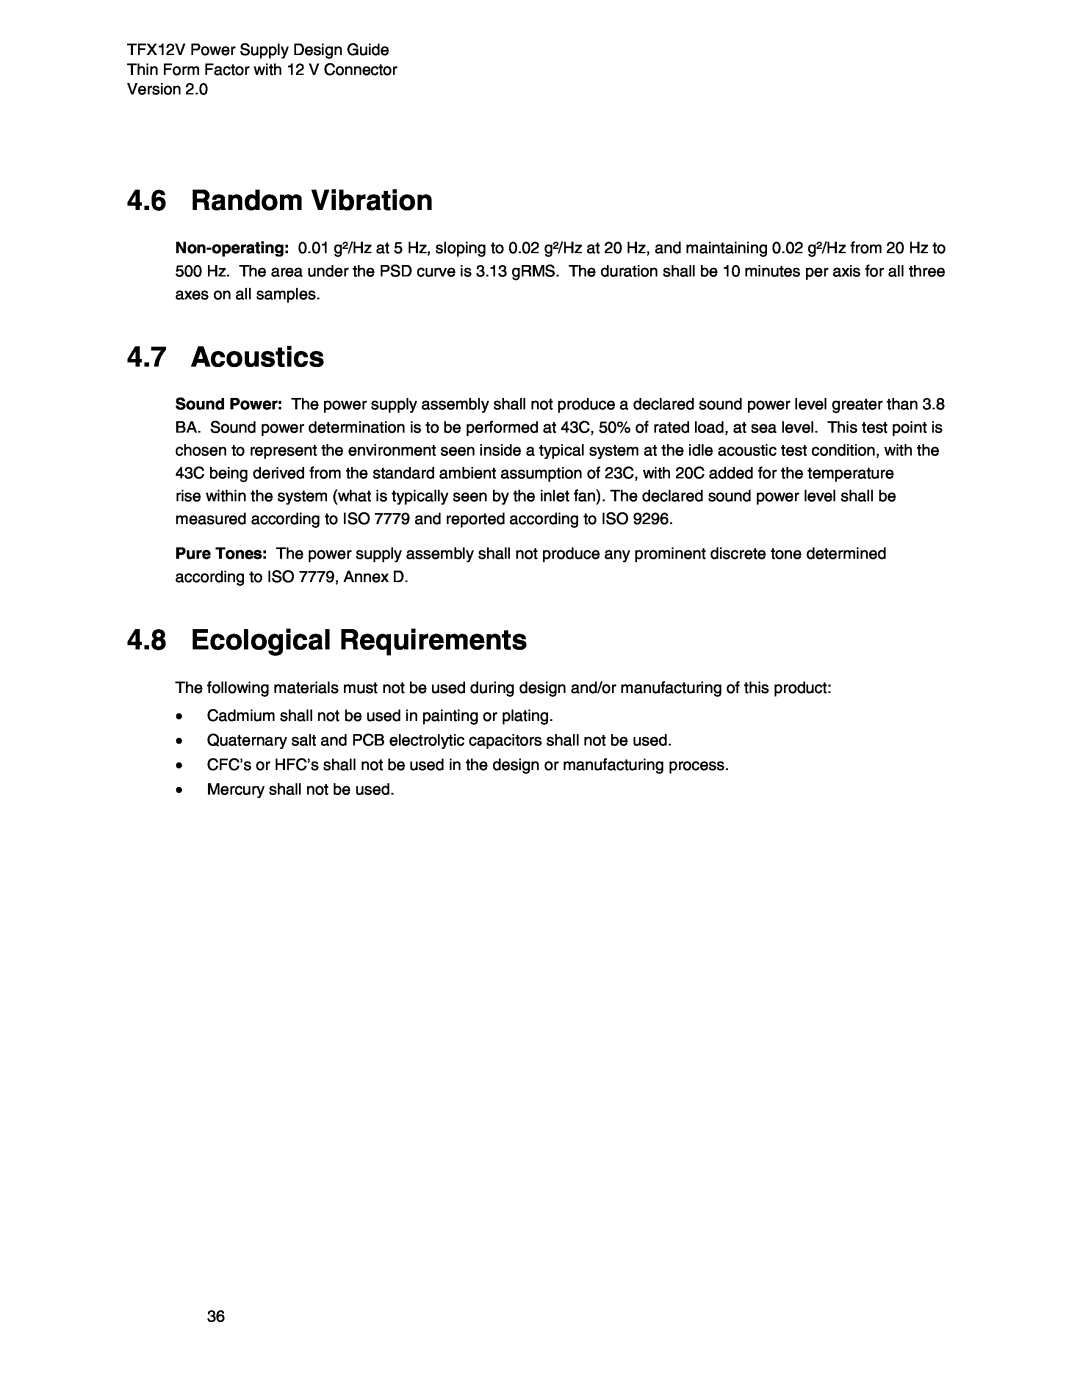 Intel TFX12V manual Random Vibration, Acoustics, Ecological Requirements 